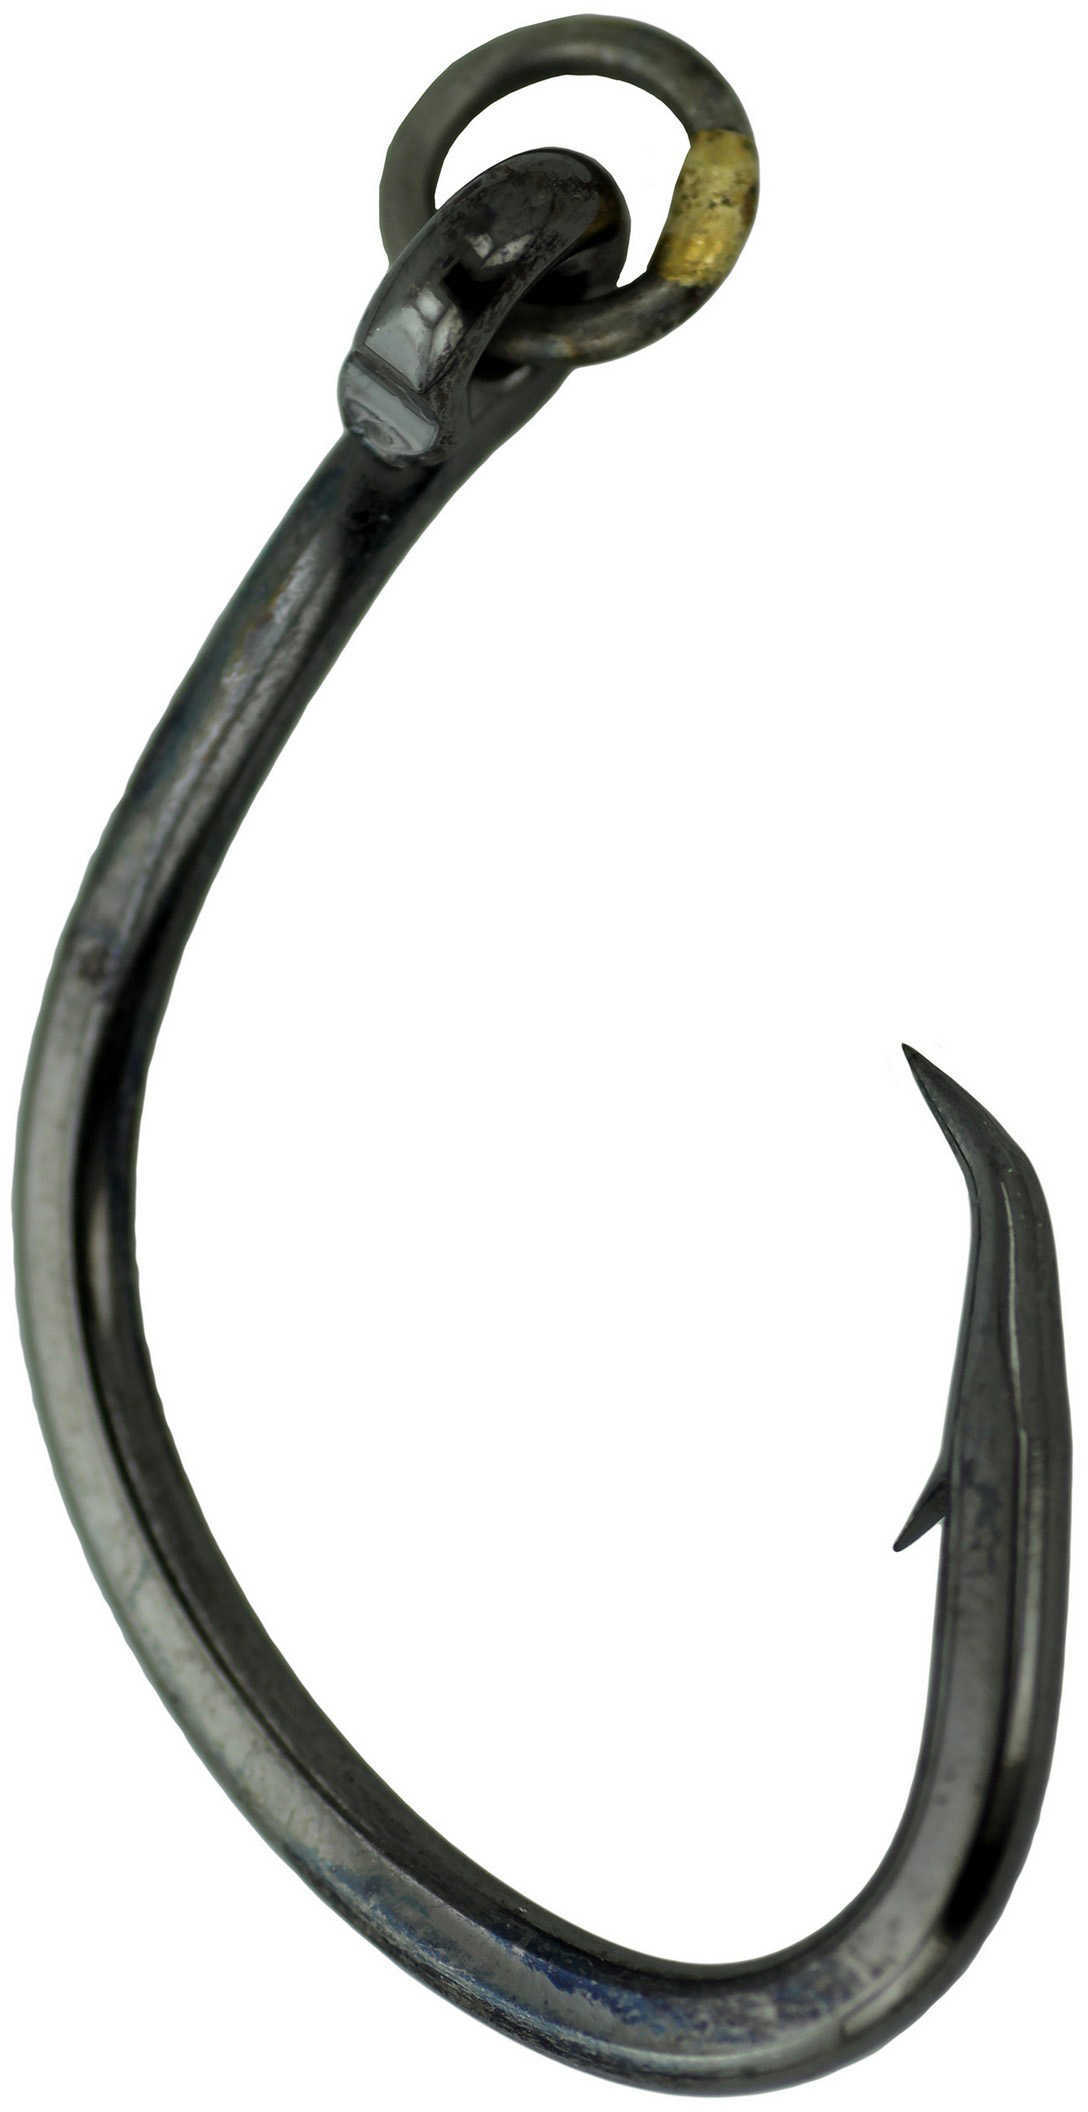 Gamakatsu / Spro Super Nautilus Circle Hook w/Ring Size 7/0 Md: 272417R